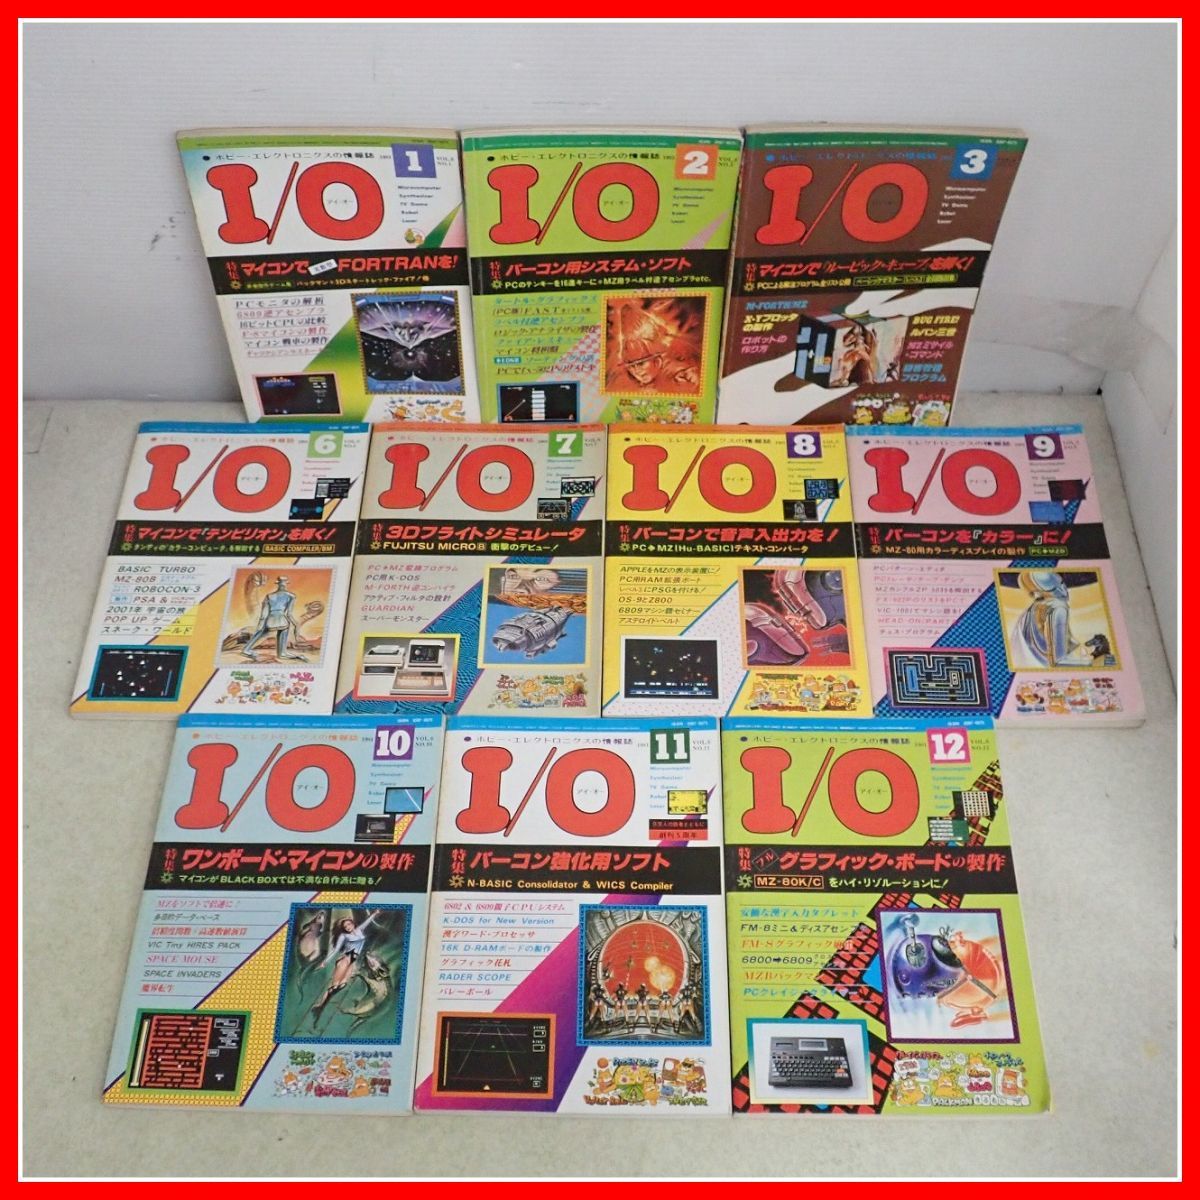 * журнал ежемесячный I/O/ I *o-1981 год продажа минут совместно 10 шт. комплект инженерия фирма хобби * electronics информация журнал [20